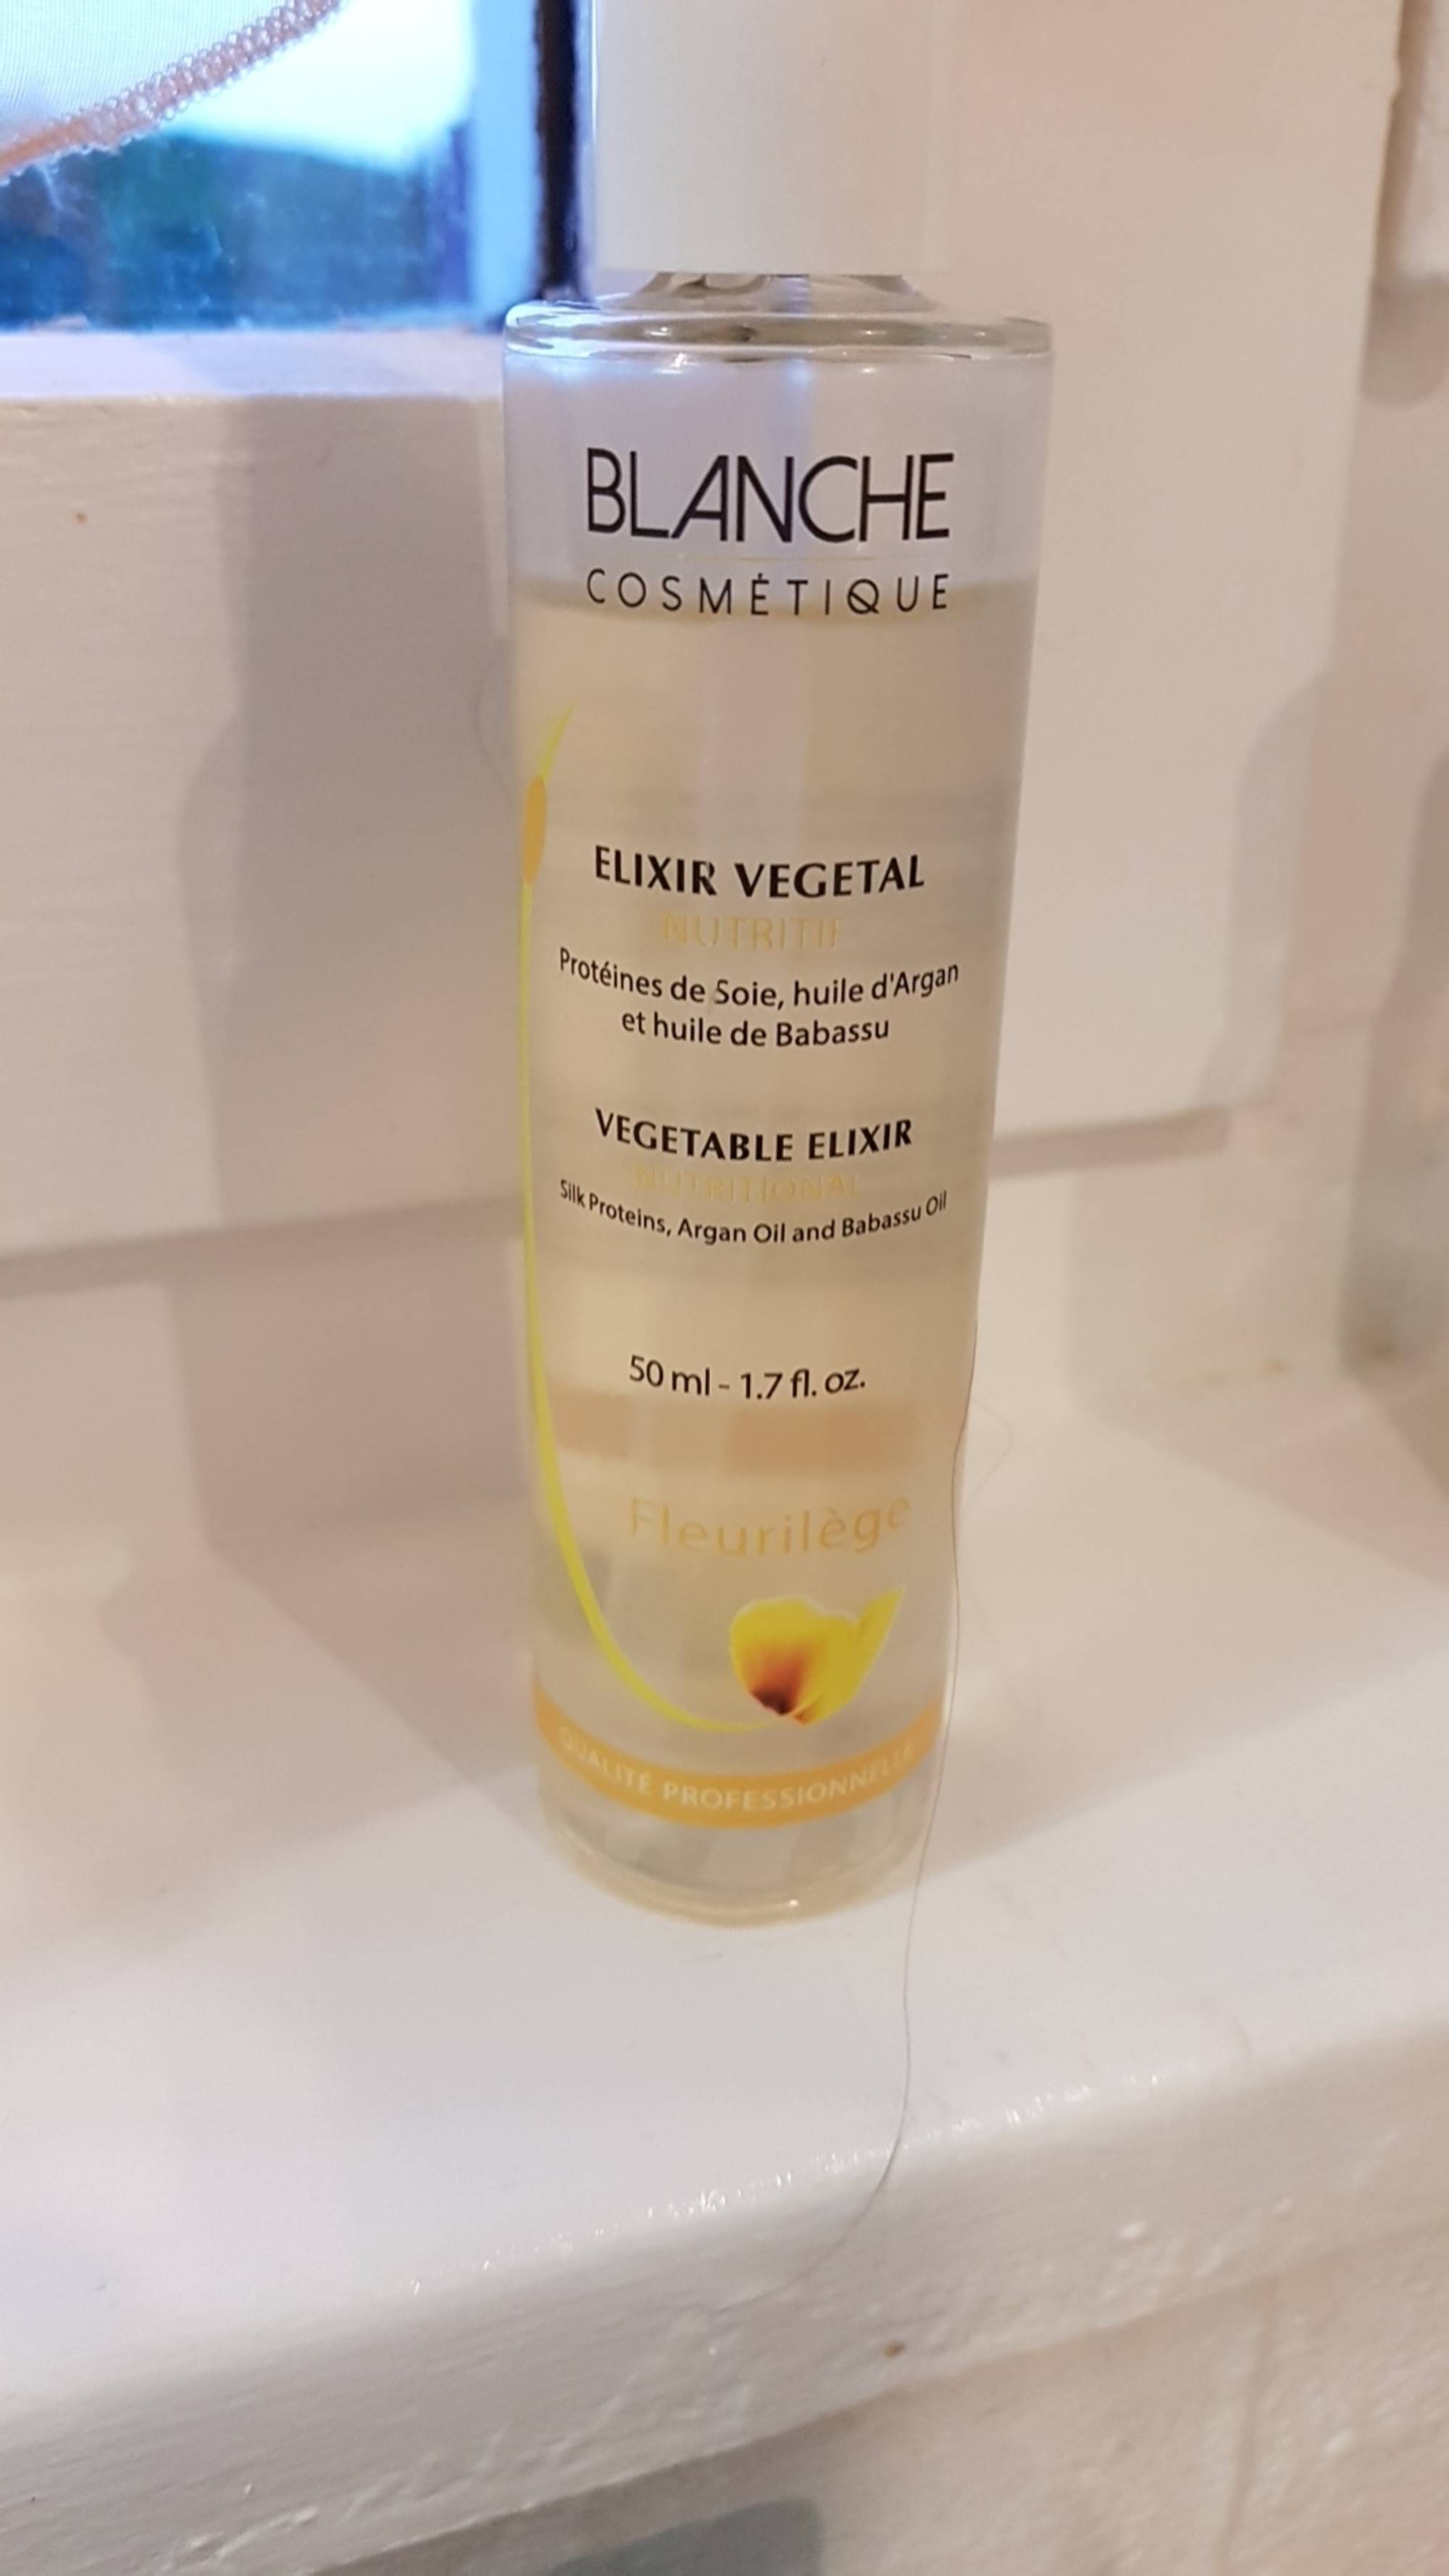 BLANCHE COSMETIQUE - Fleurilège - Elixir végétal nutritif